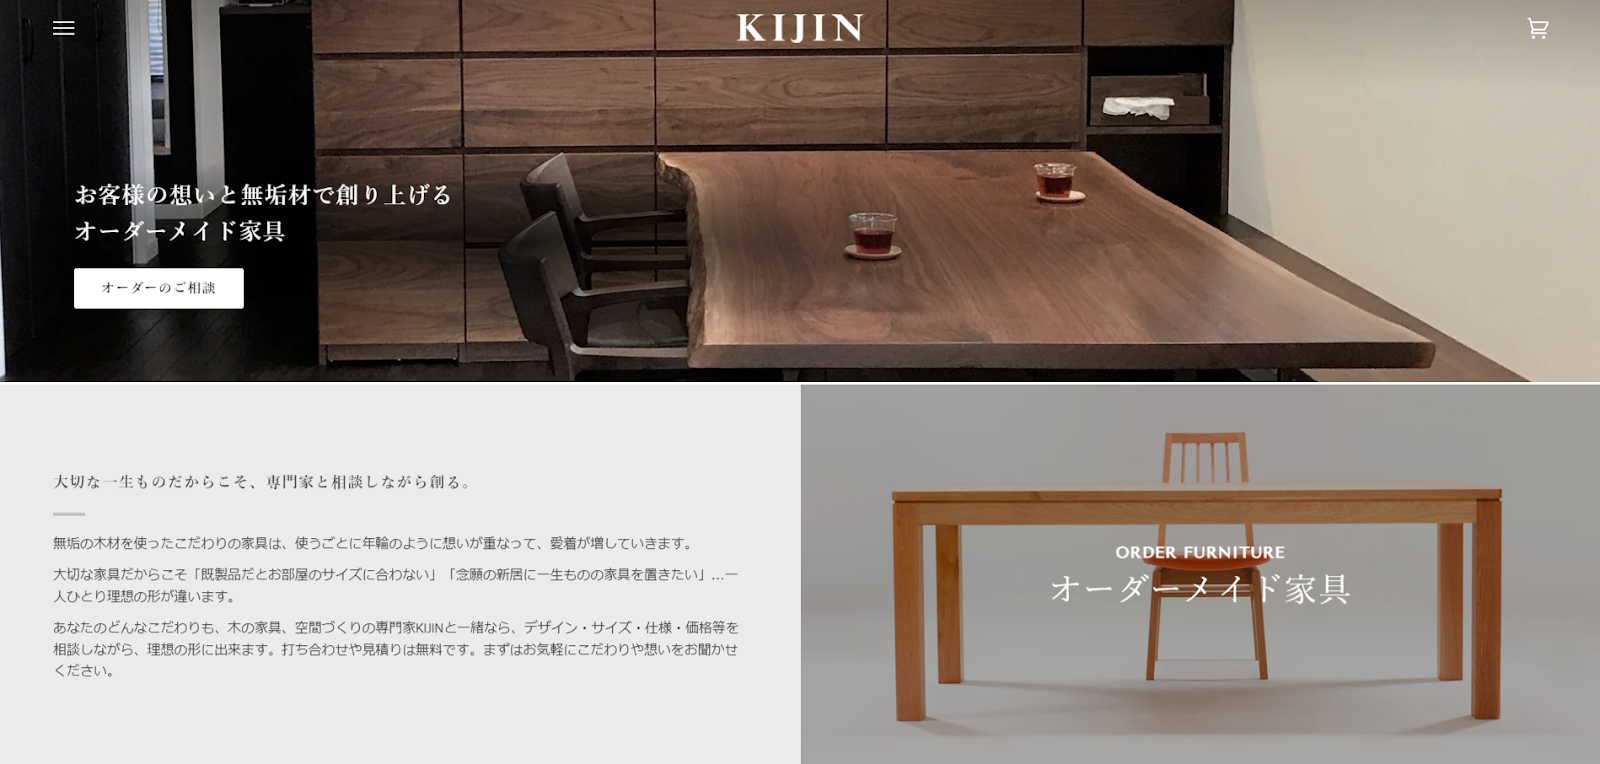 4、無垢材を使用したオーダーメイド家具「KIJIN」